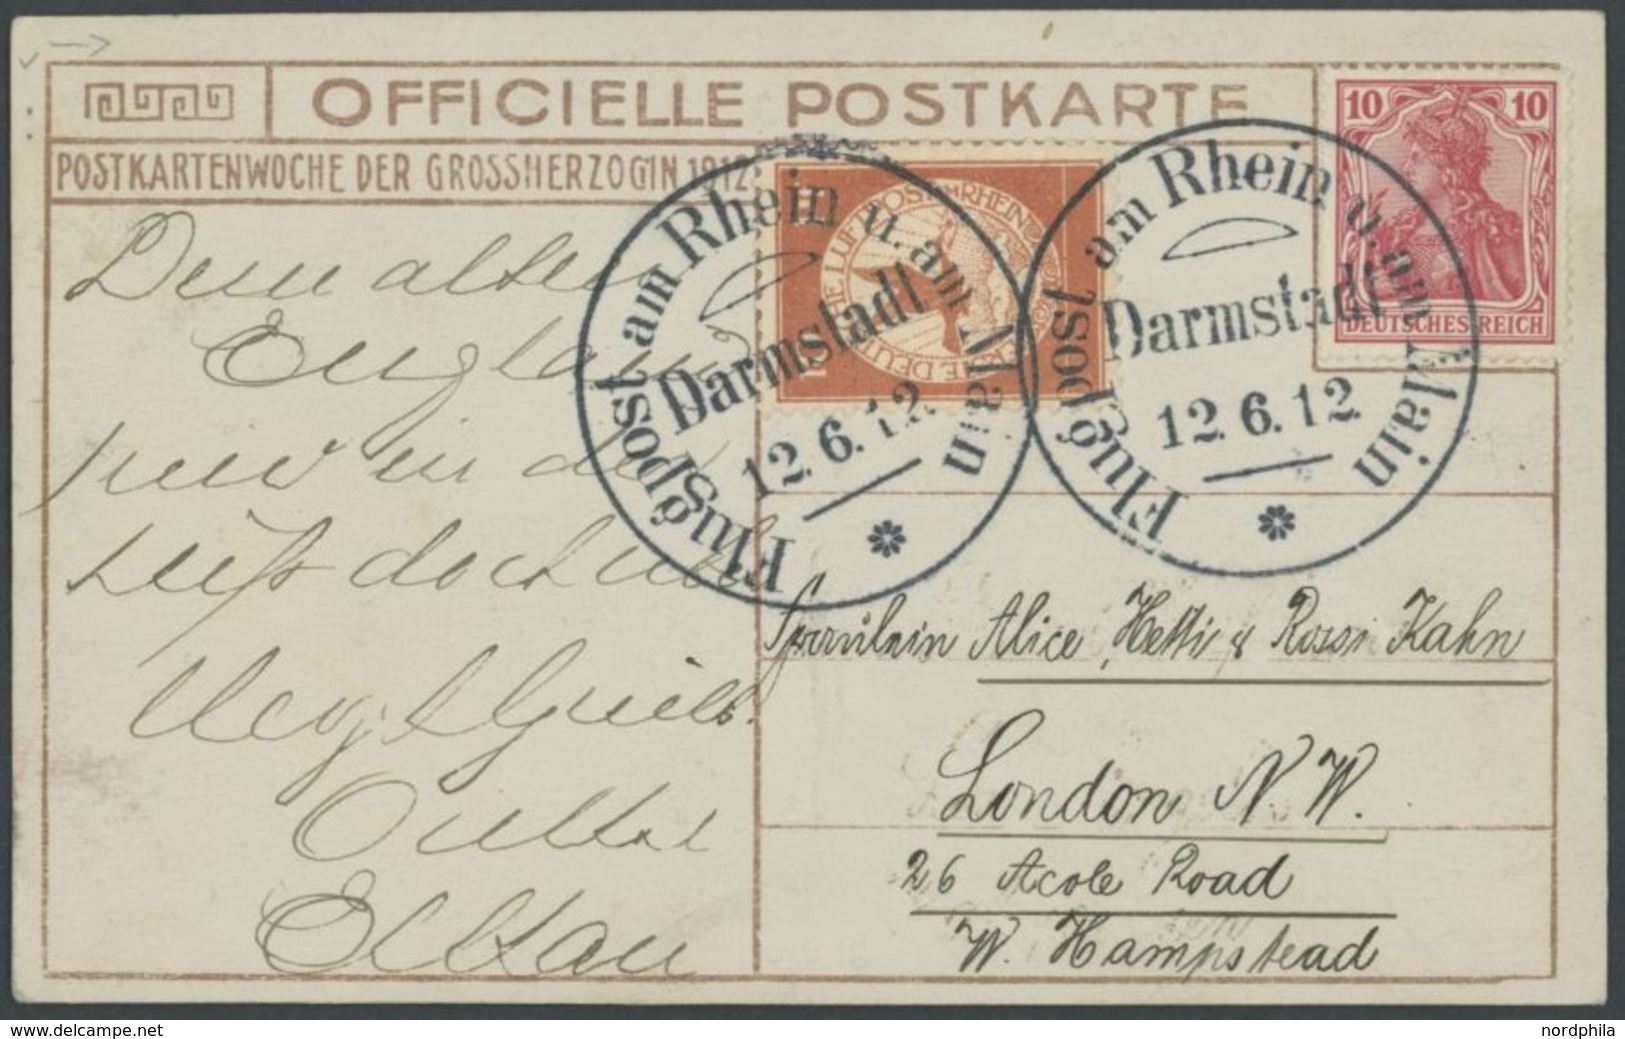 1912, 10 Pf. Flp. Am Rhein Und Main Auf Flugpostkarte (Großherzogin) Mit 10 Pf. Zusatzfrankatur, Sonderstempel Darmstadt - Airmail & Zeppelin